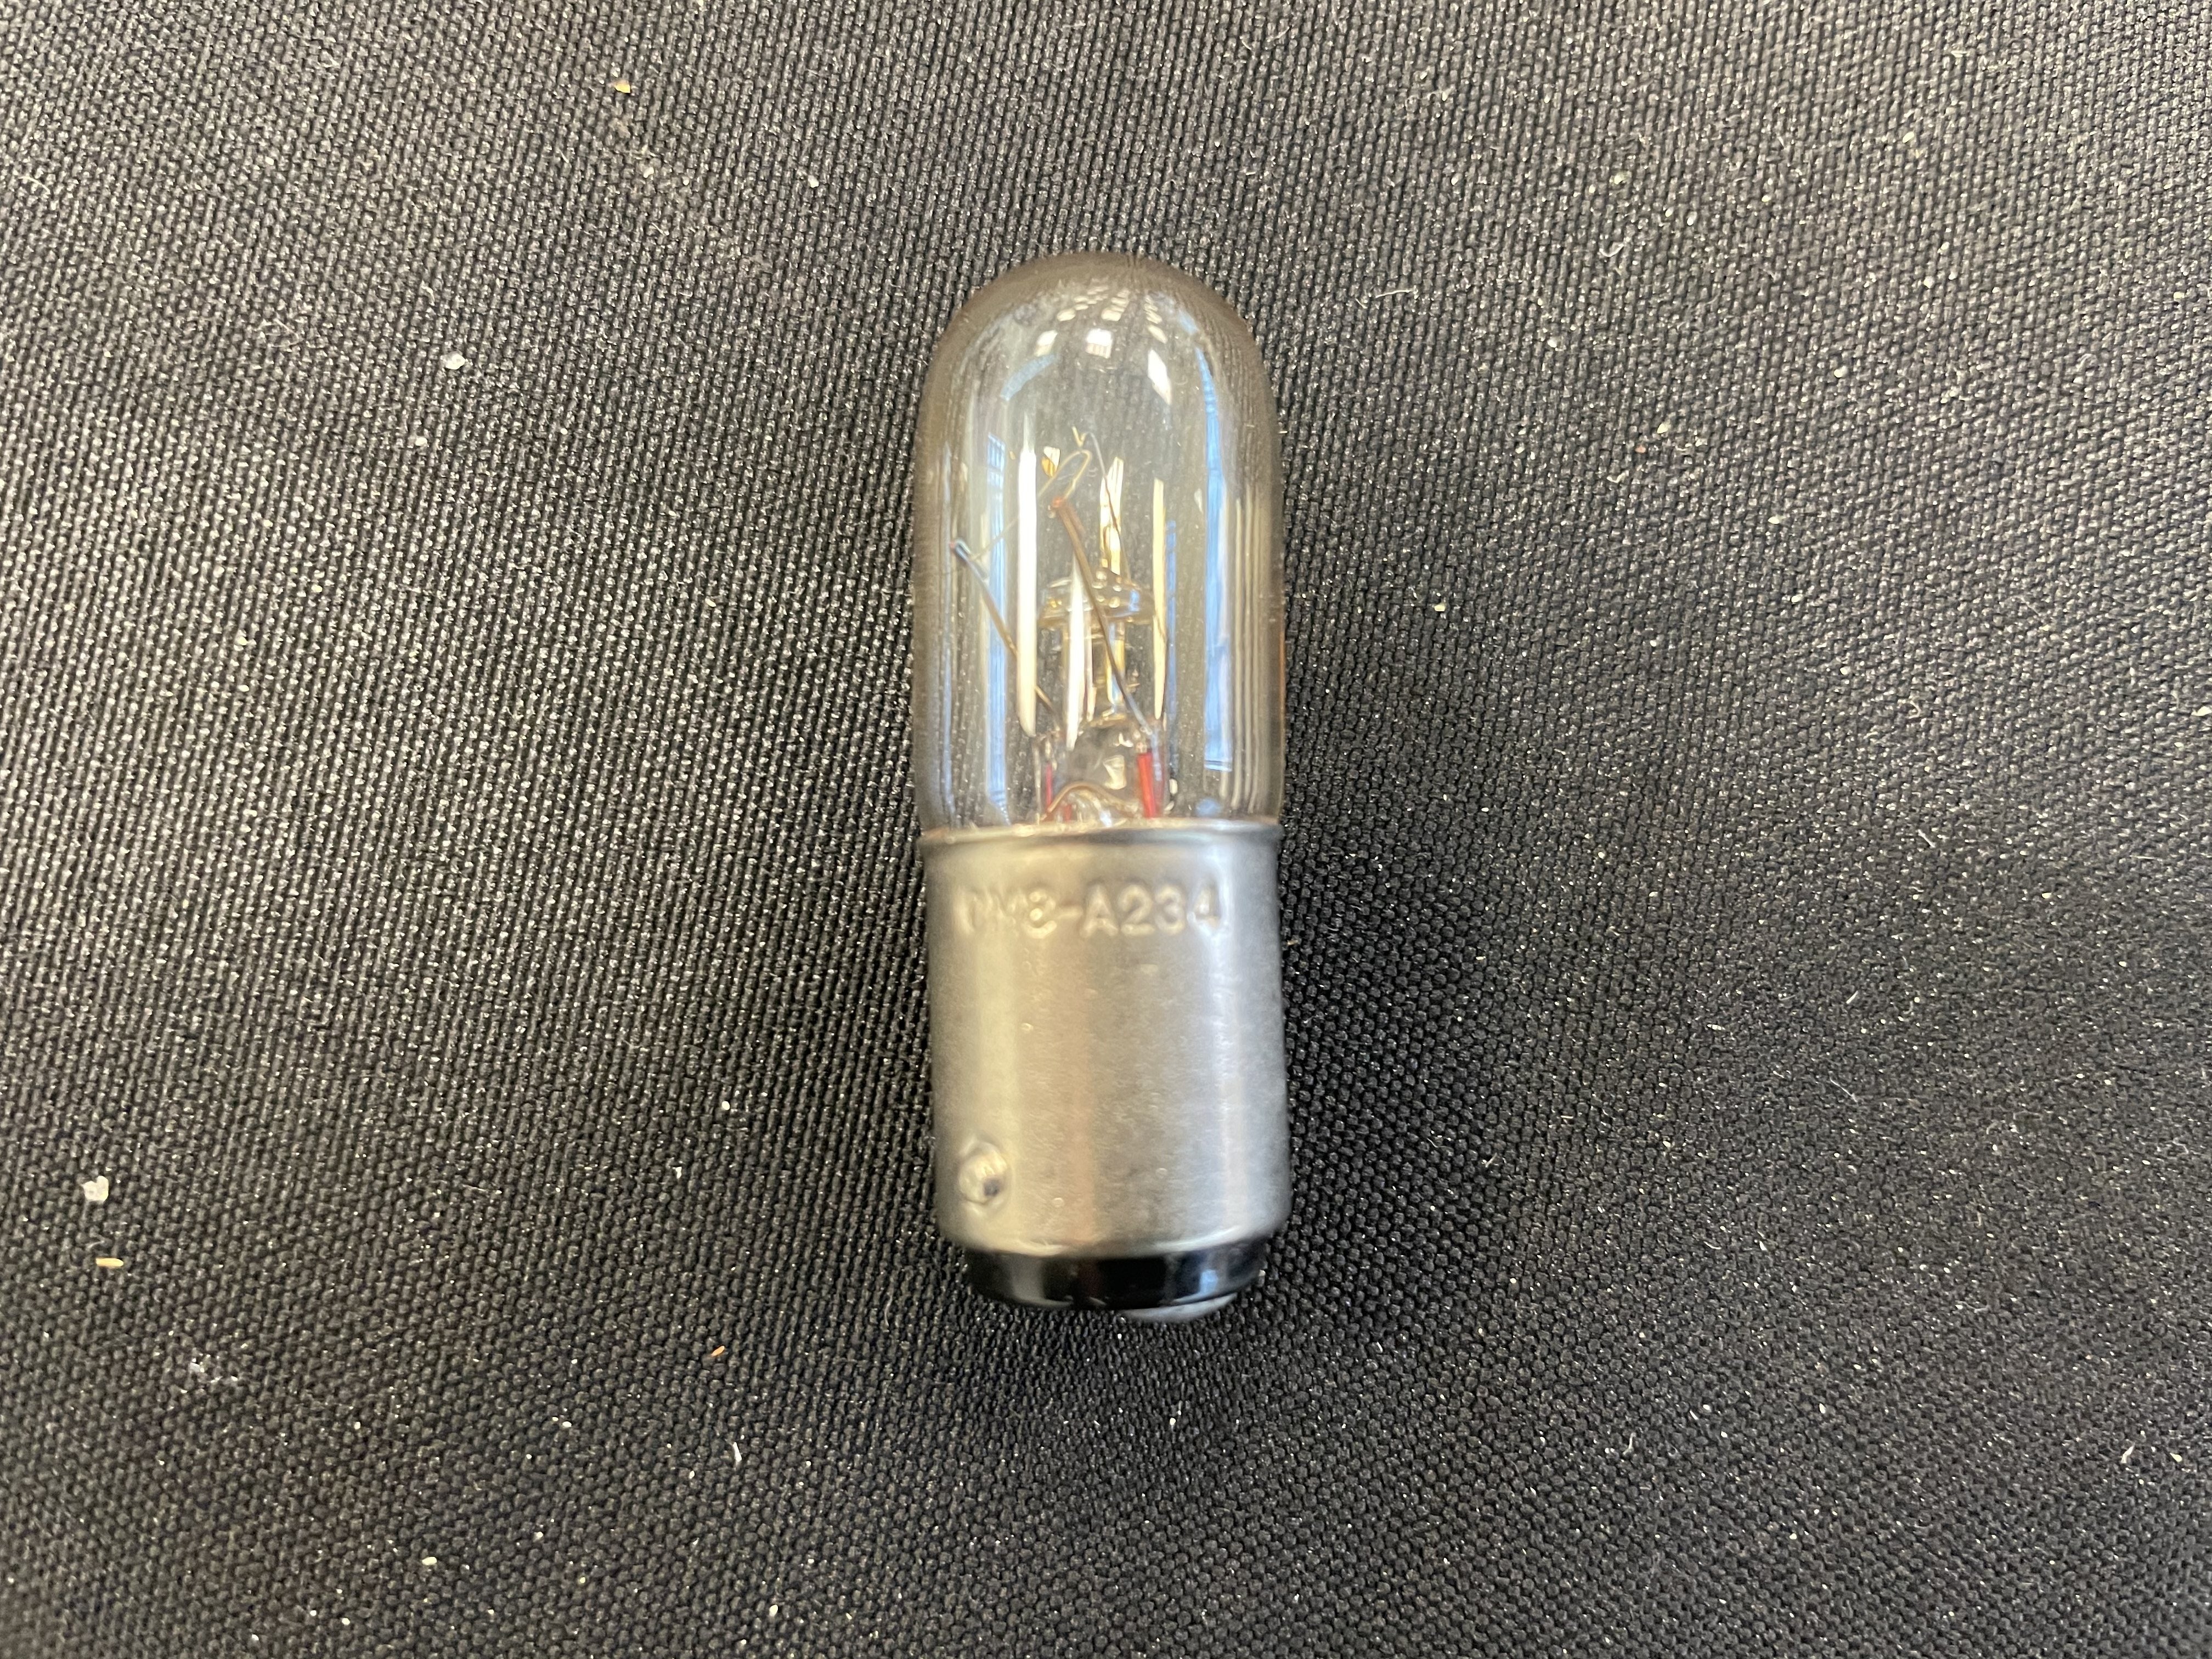 CM8-A234 Bulb for IMA/Zanasi